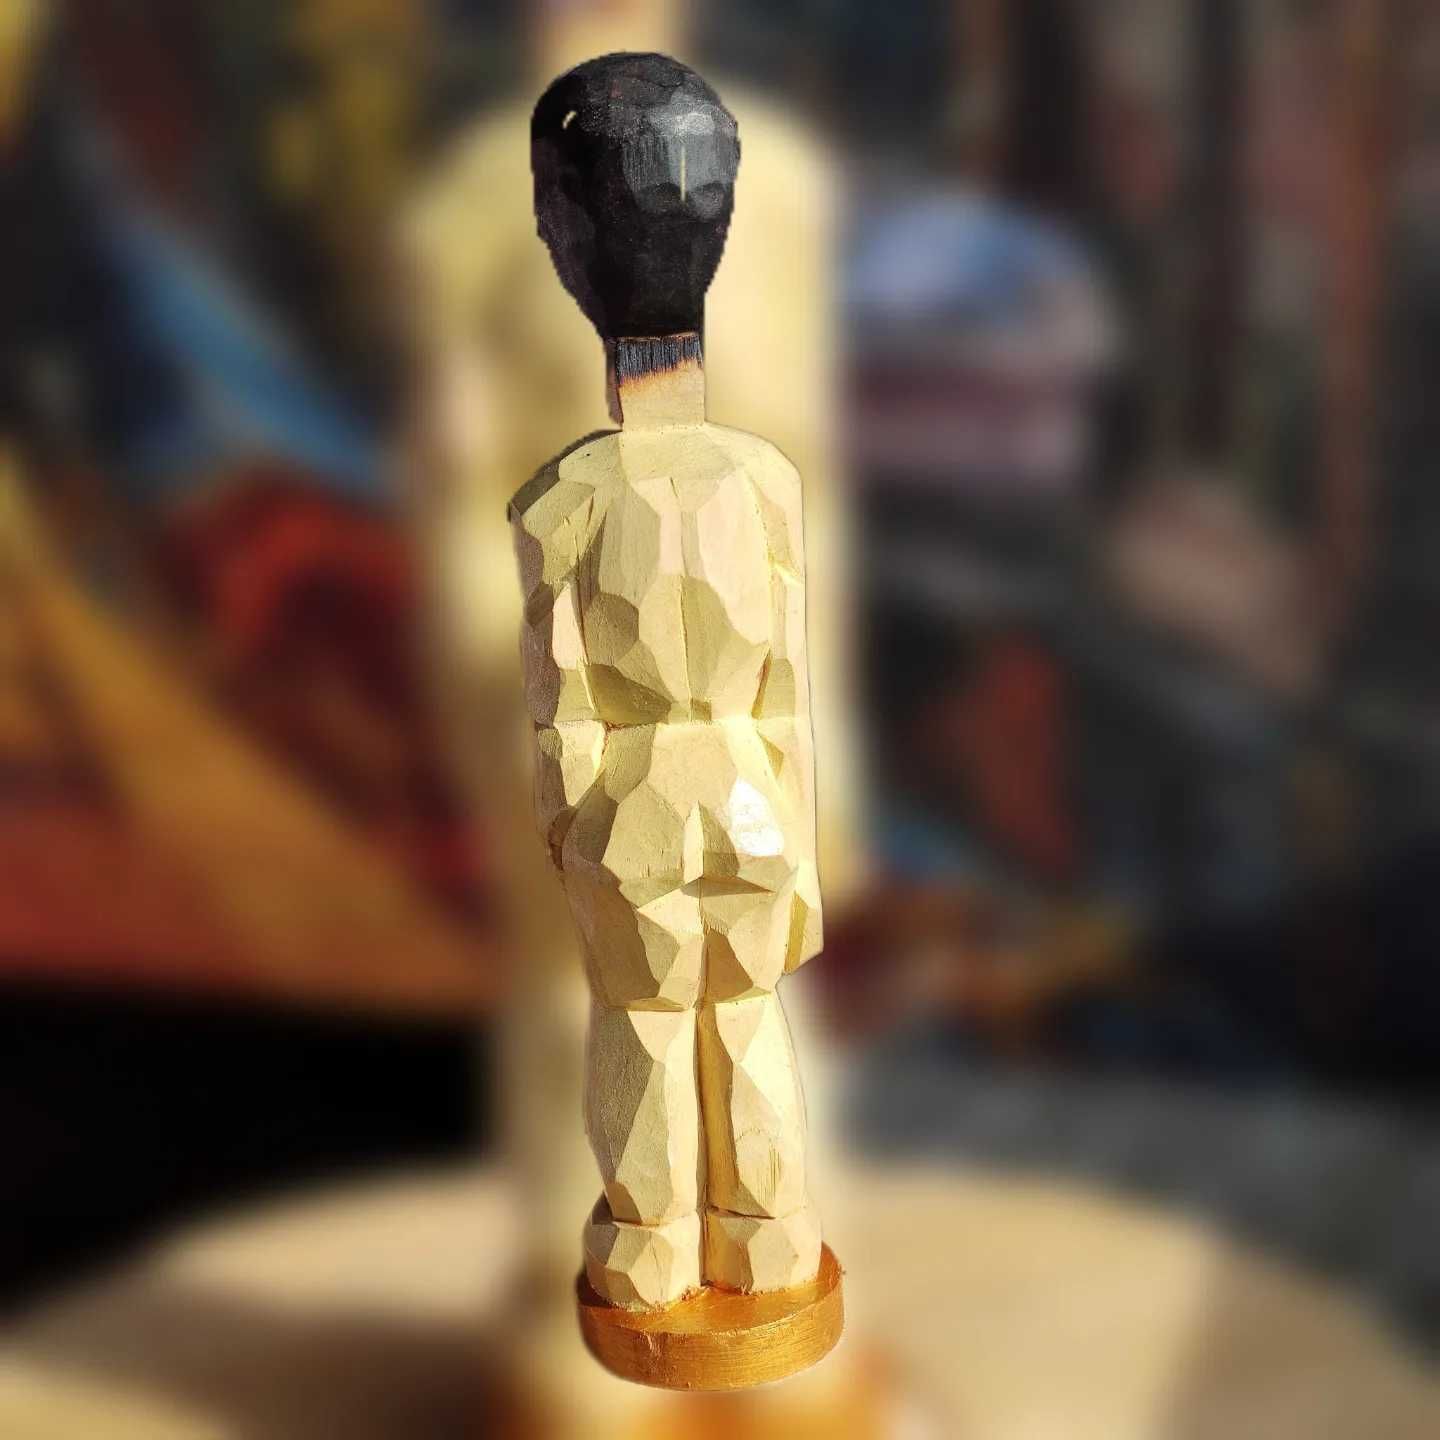 Rzeźba drewniana "Człowiek zapałka".